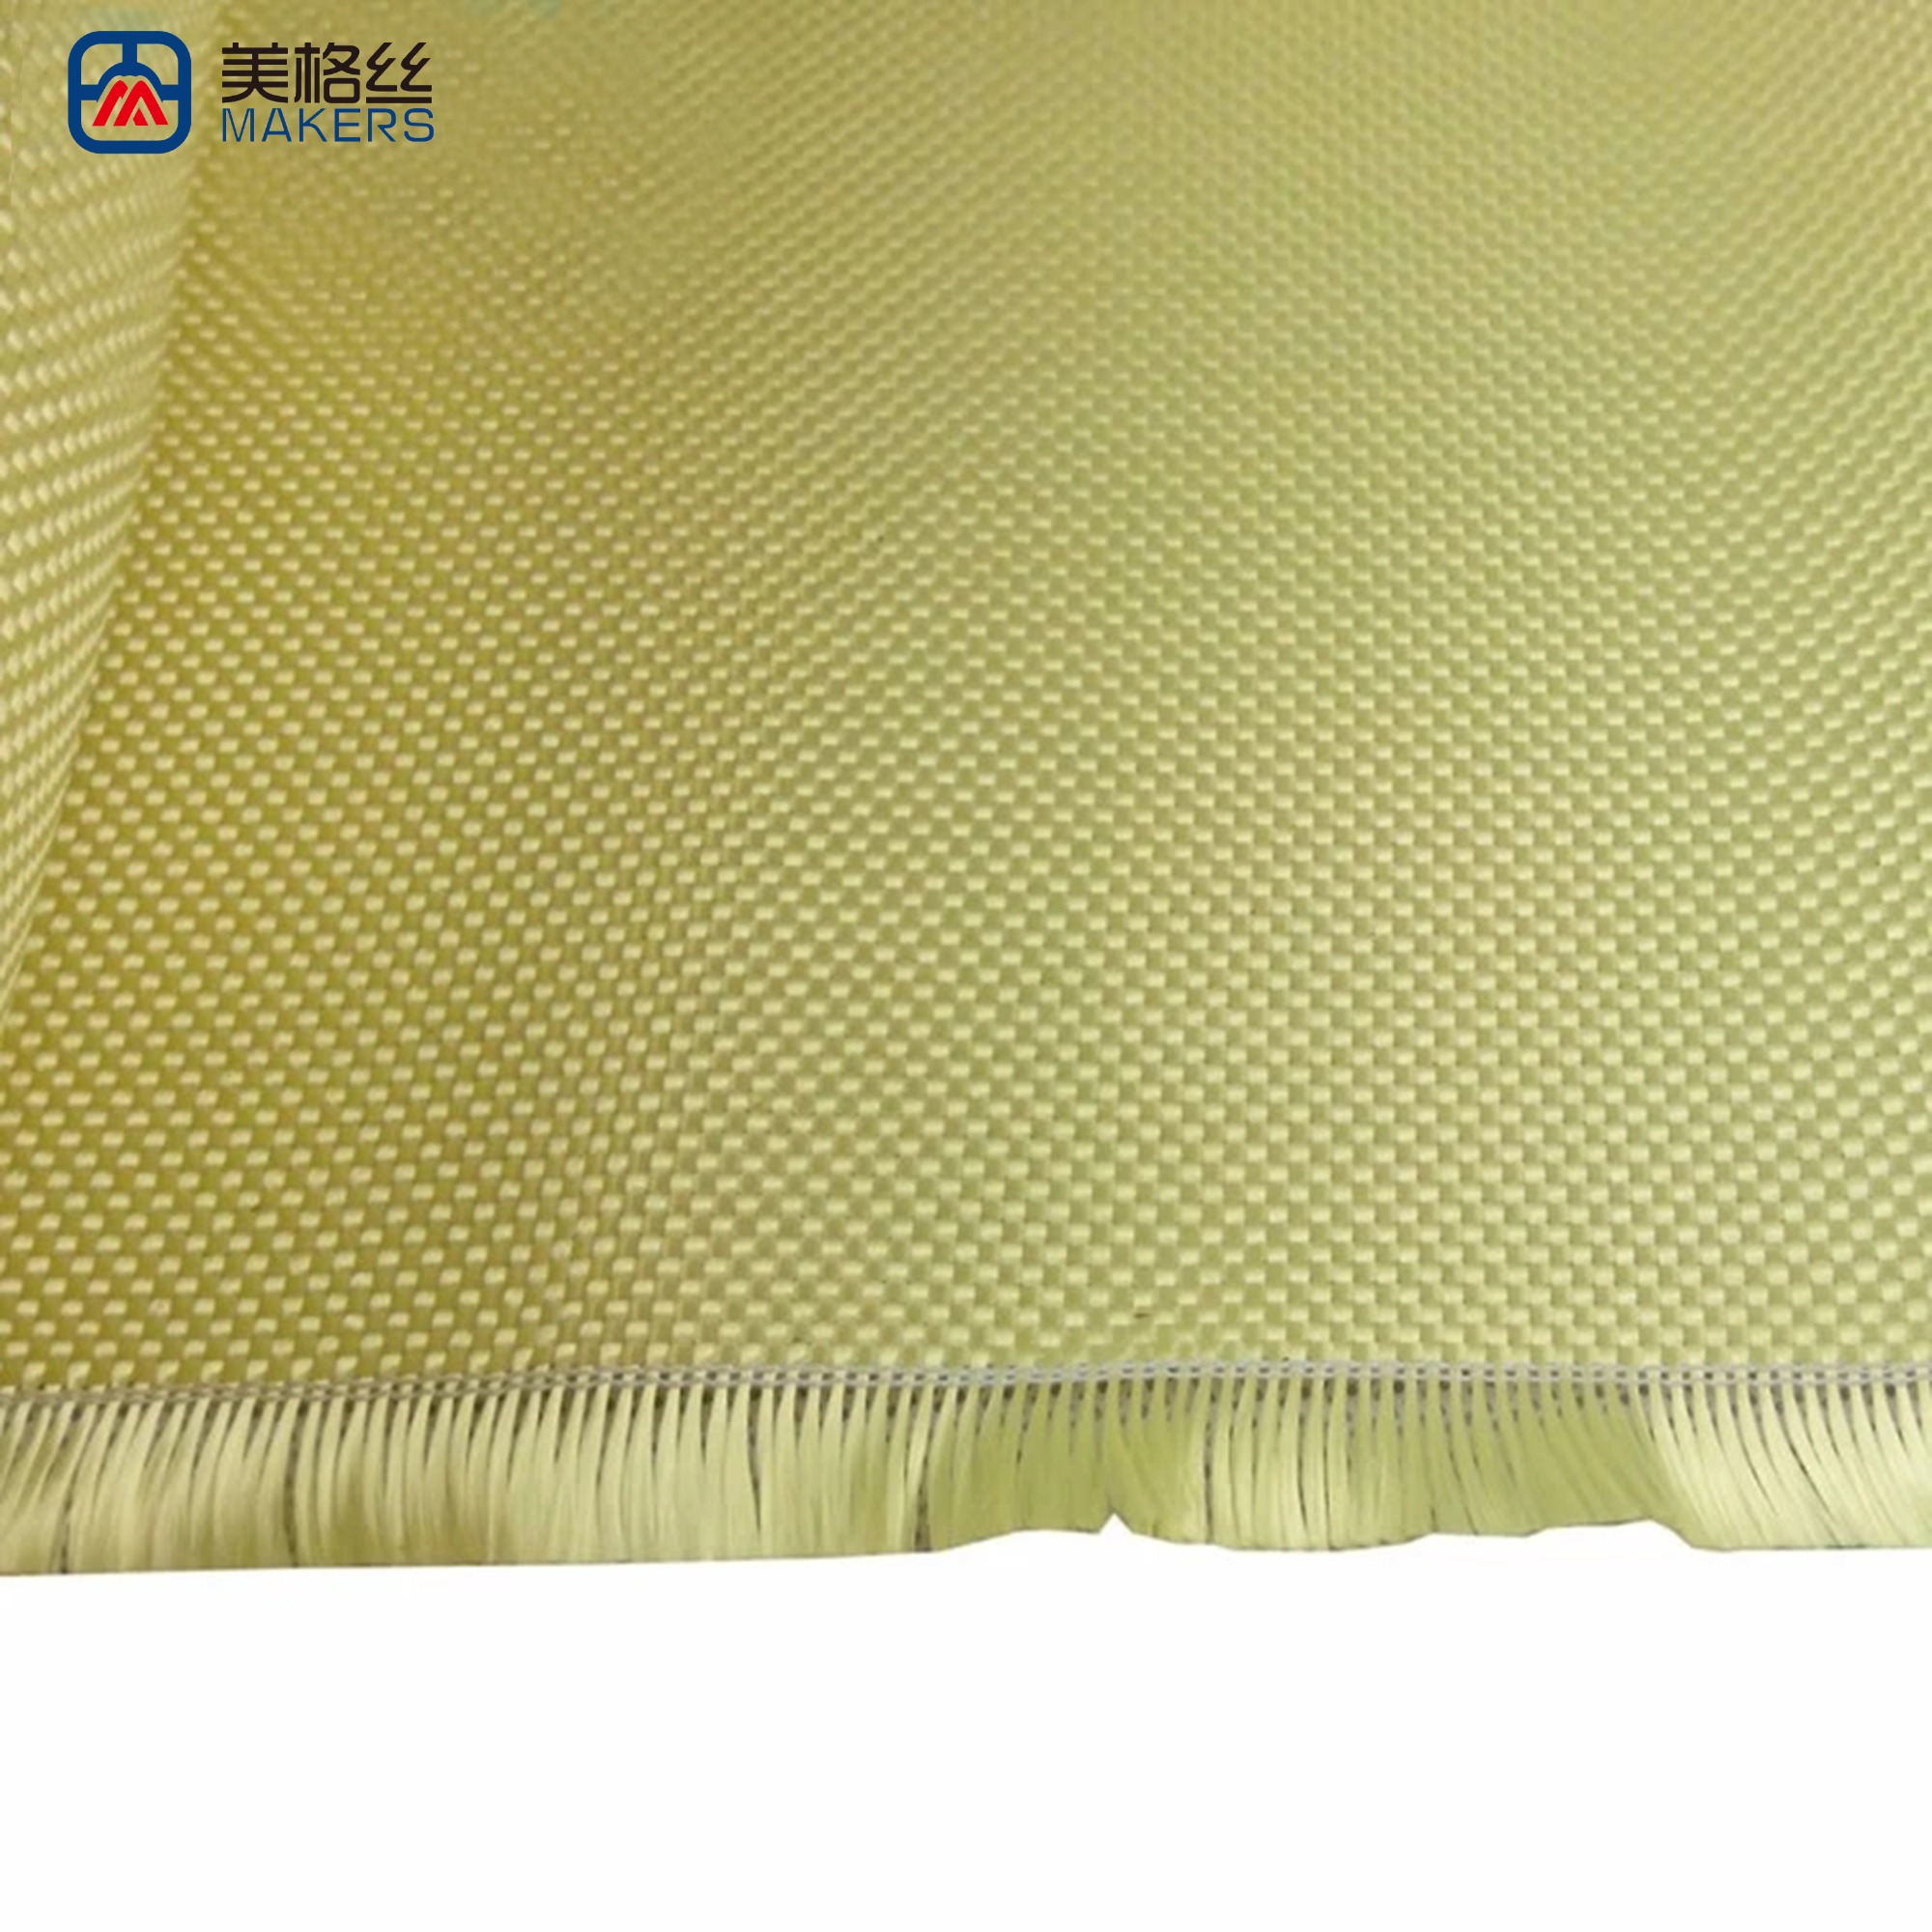 Aramid fabric cut resistant ,Kevlar Aramid cloth, bulletproof vest fabric